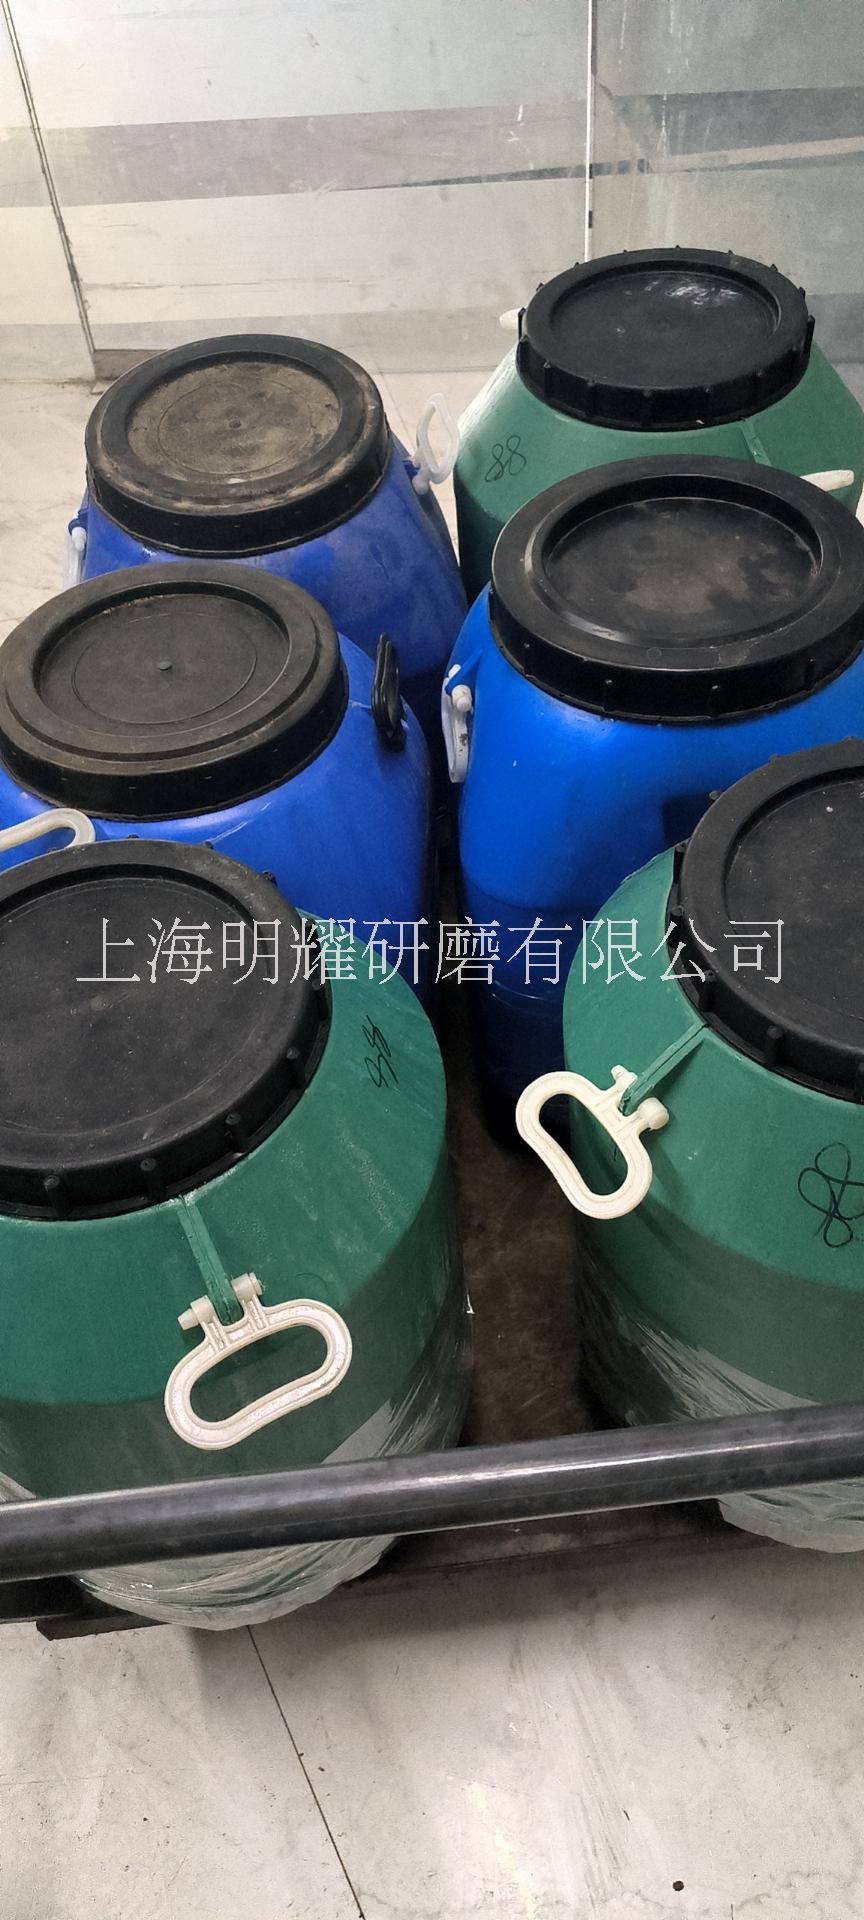 上海明耀研磨液工厂光亮剂批发 上海明耀研磨液工厂供应光亮剂批发